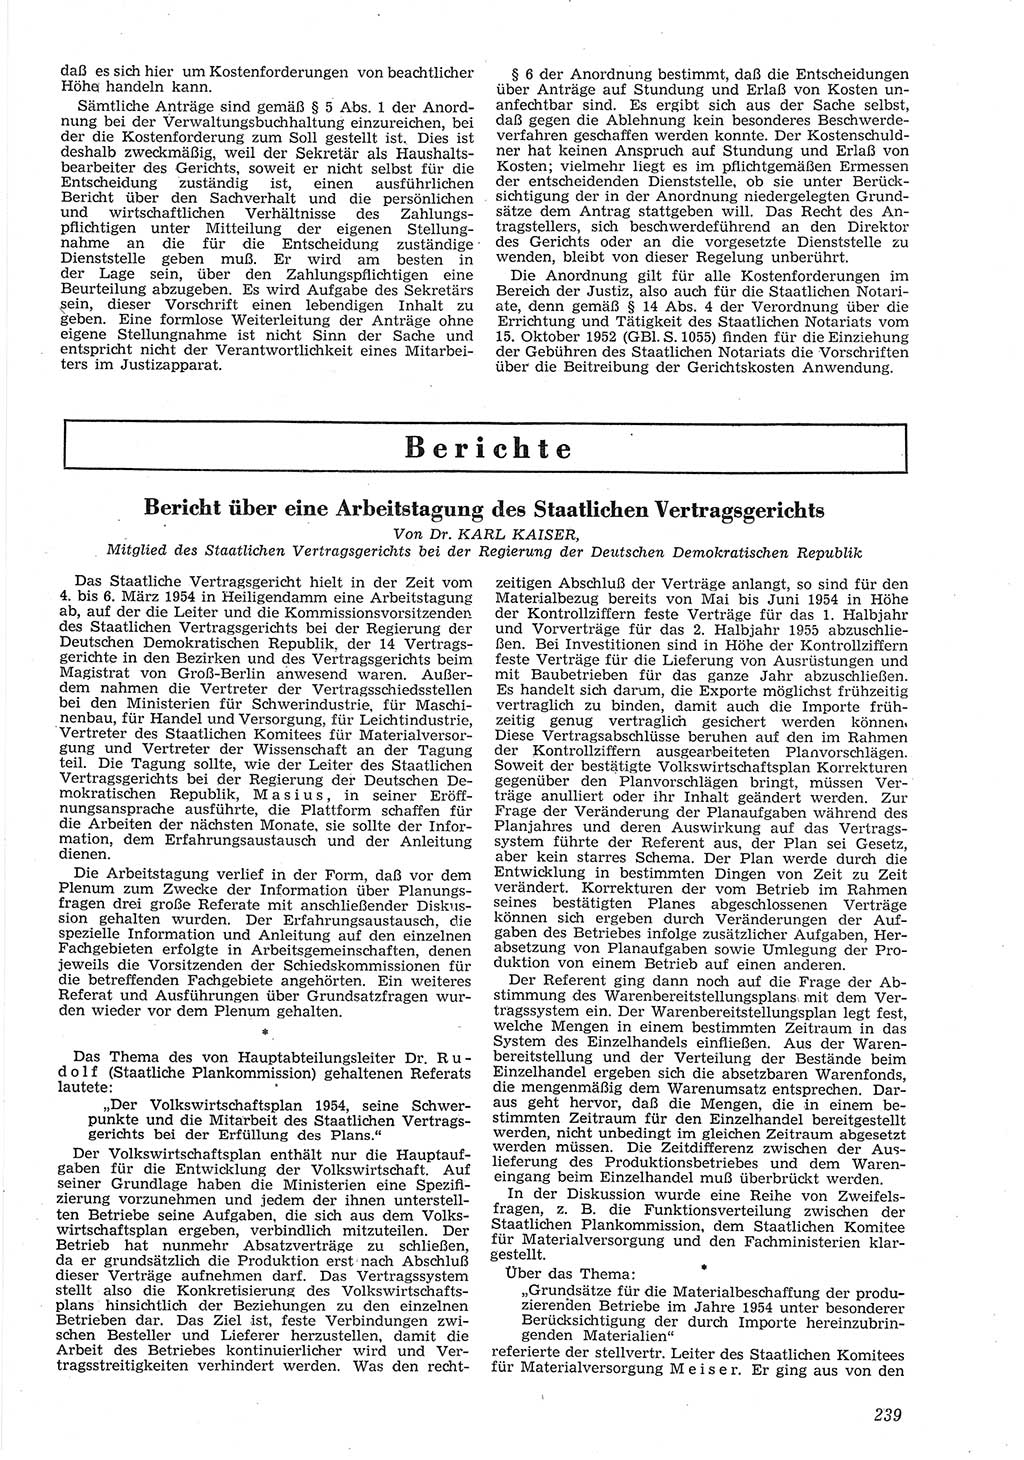 Neue Justiz (NJ), Zeitschrift für Recht und Rechtswissenschaft [Deutsche Demokratische Republik (DDR)], 8. Jahrgang 1954, Seite 239 (NJ DDR 1954, S. 239)